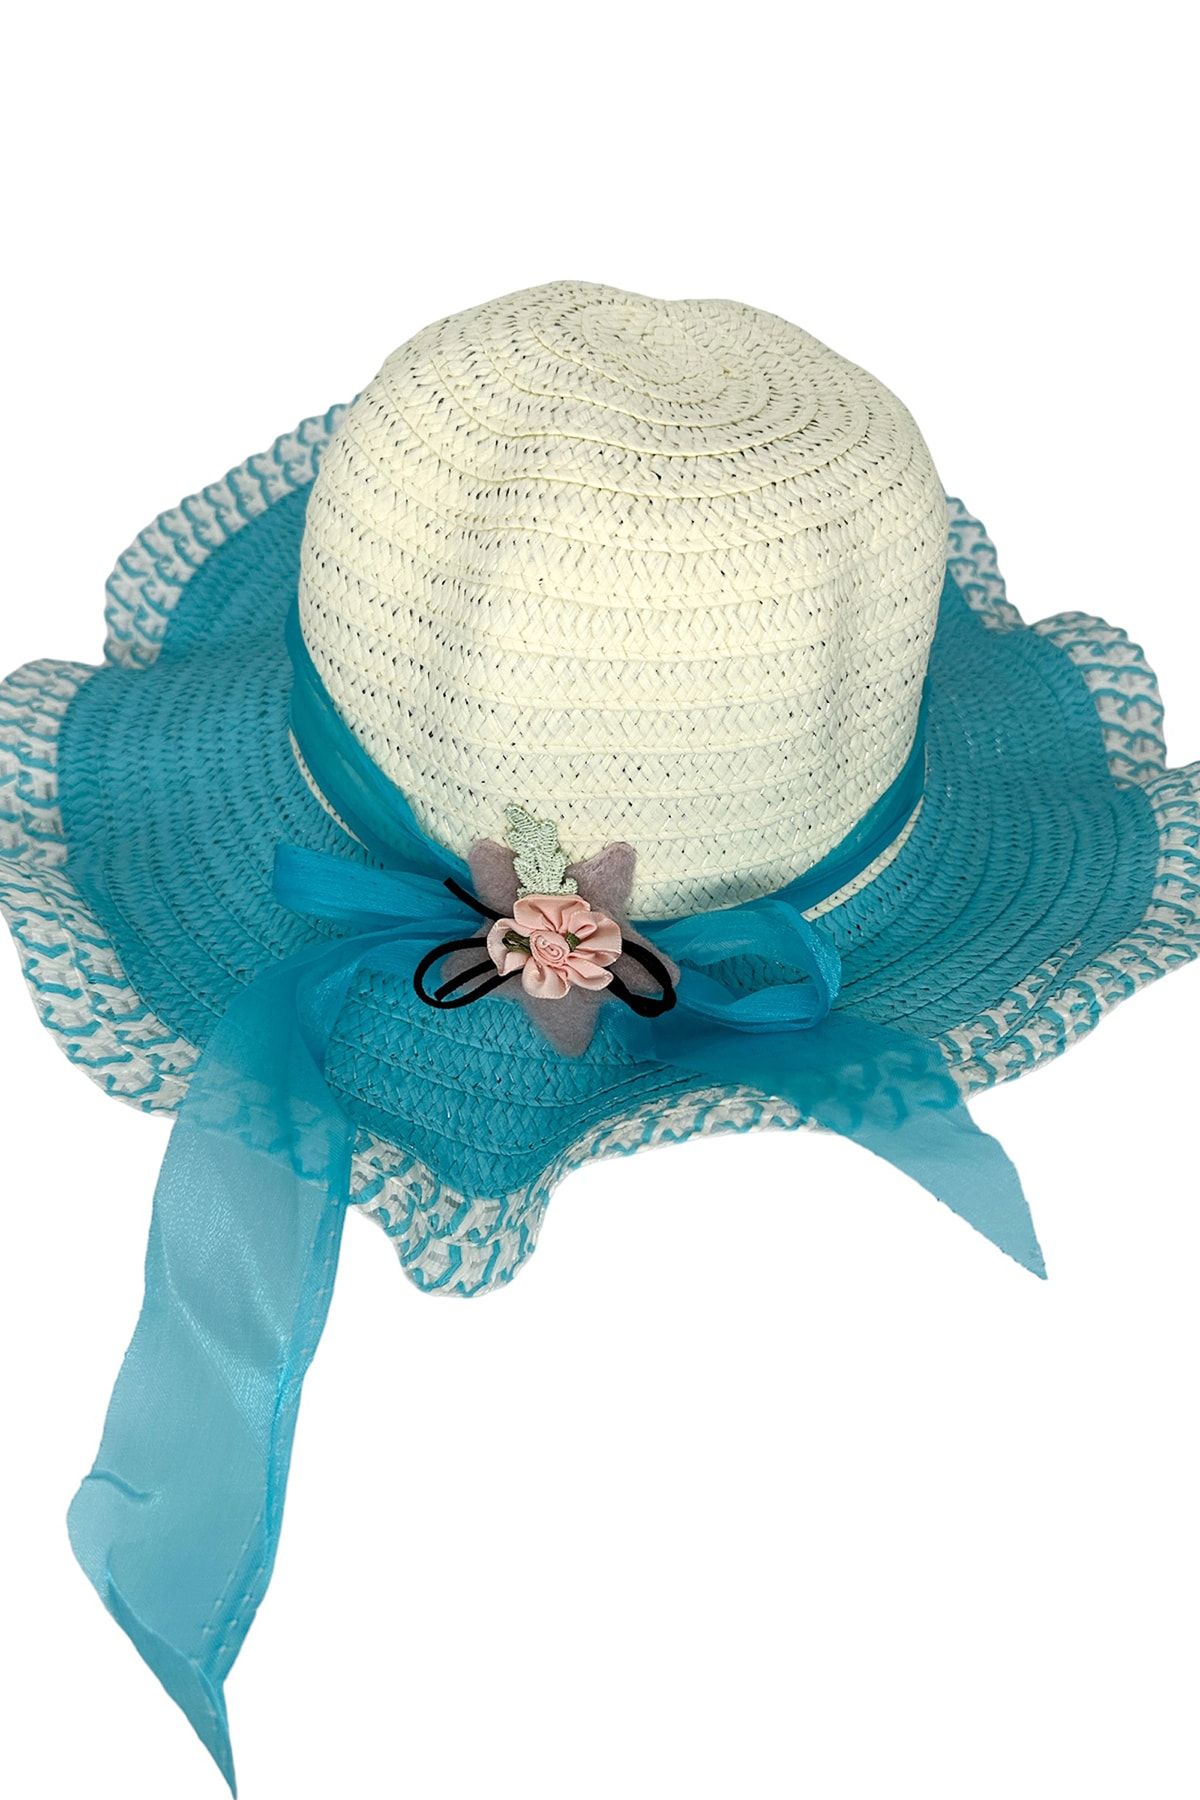 Beoje Kadın Şapkası Hasır Desenli Çiçekli Fiyonk Model Akdsp-0056